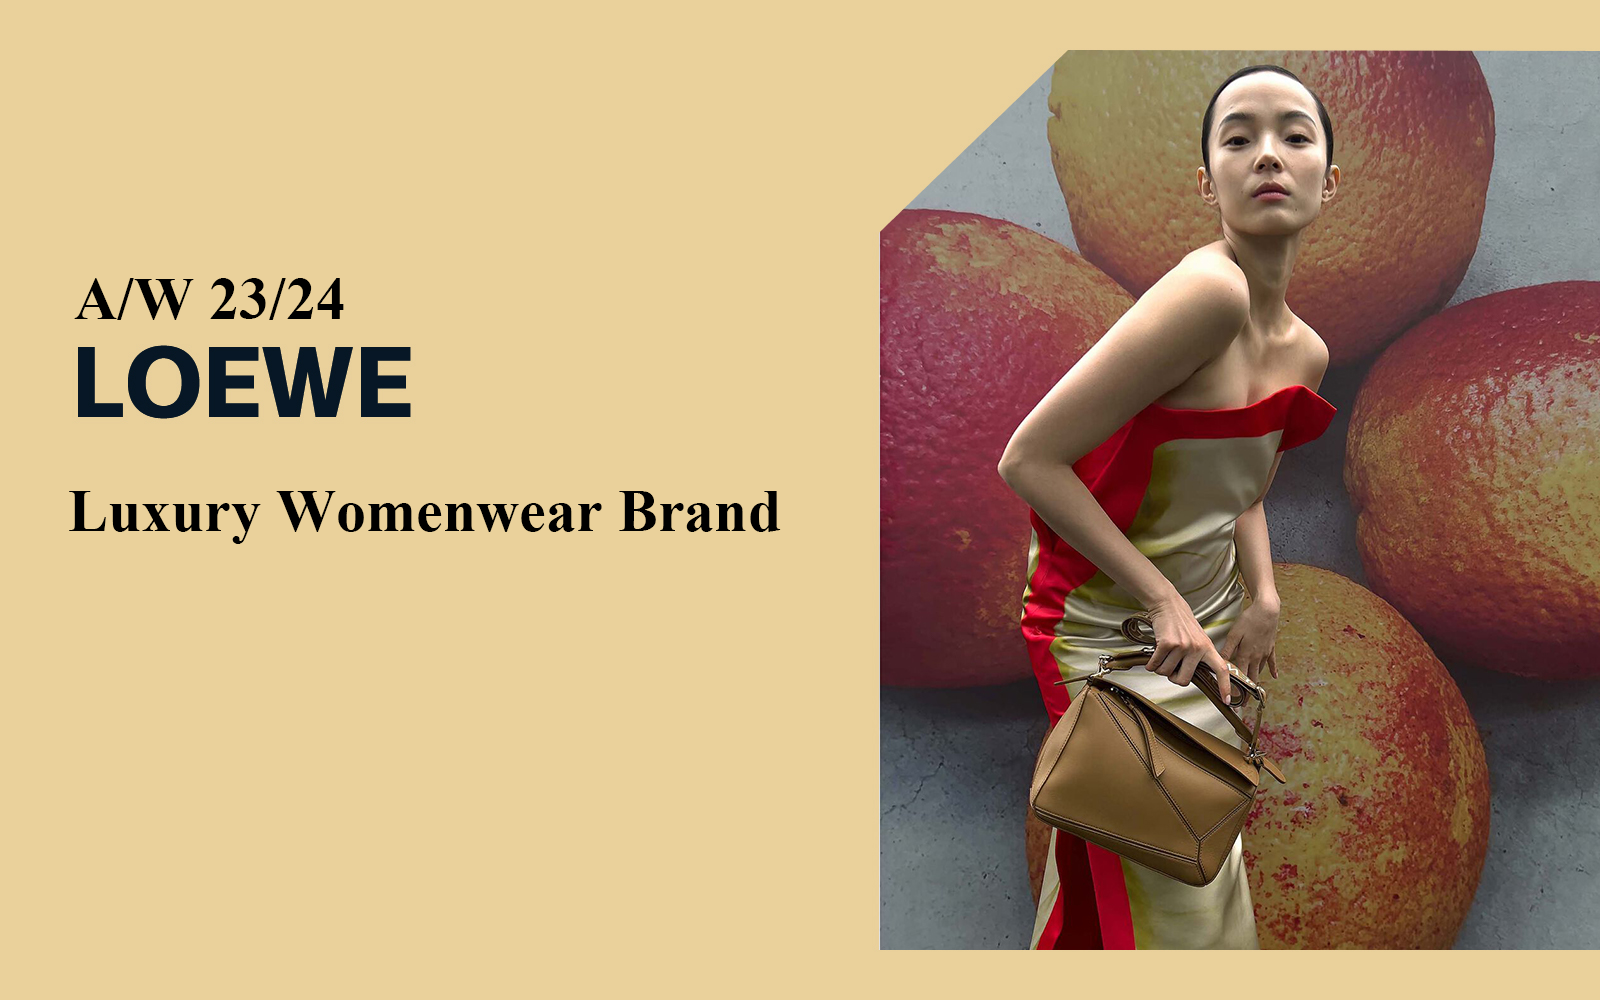 The Analysis of LOEWE Luxury Womenswear Brand